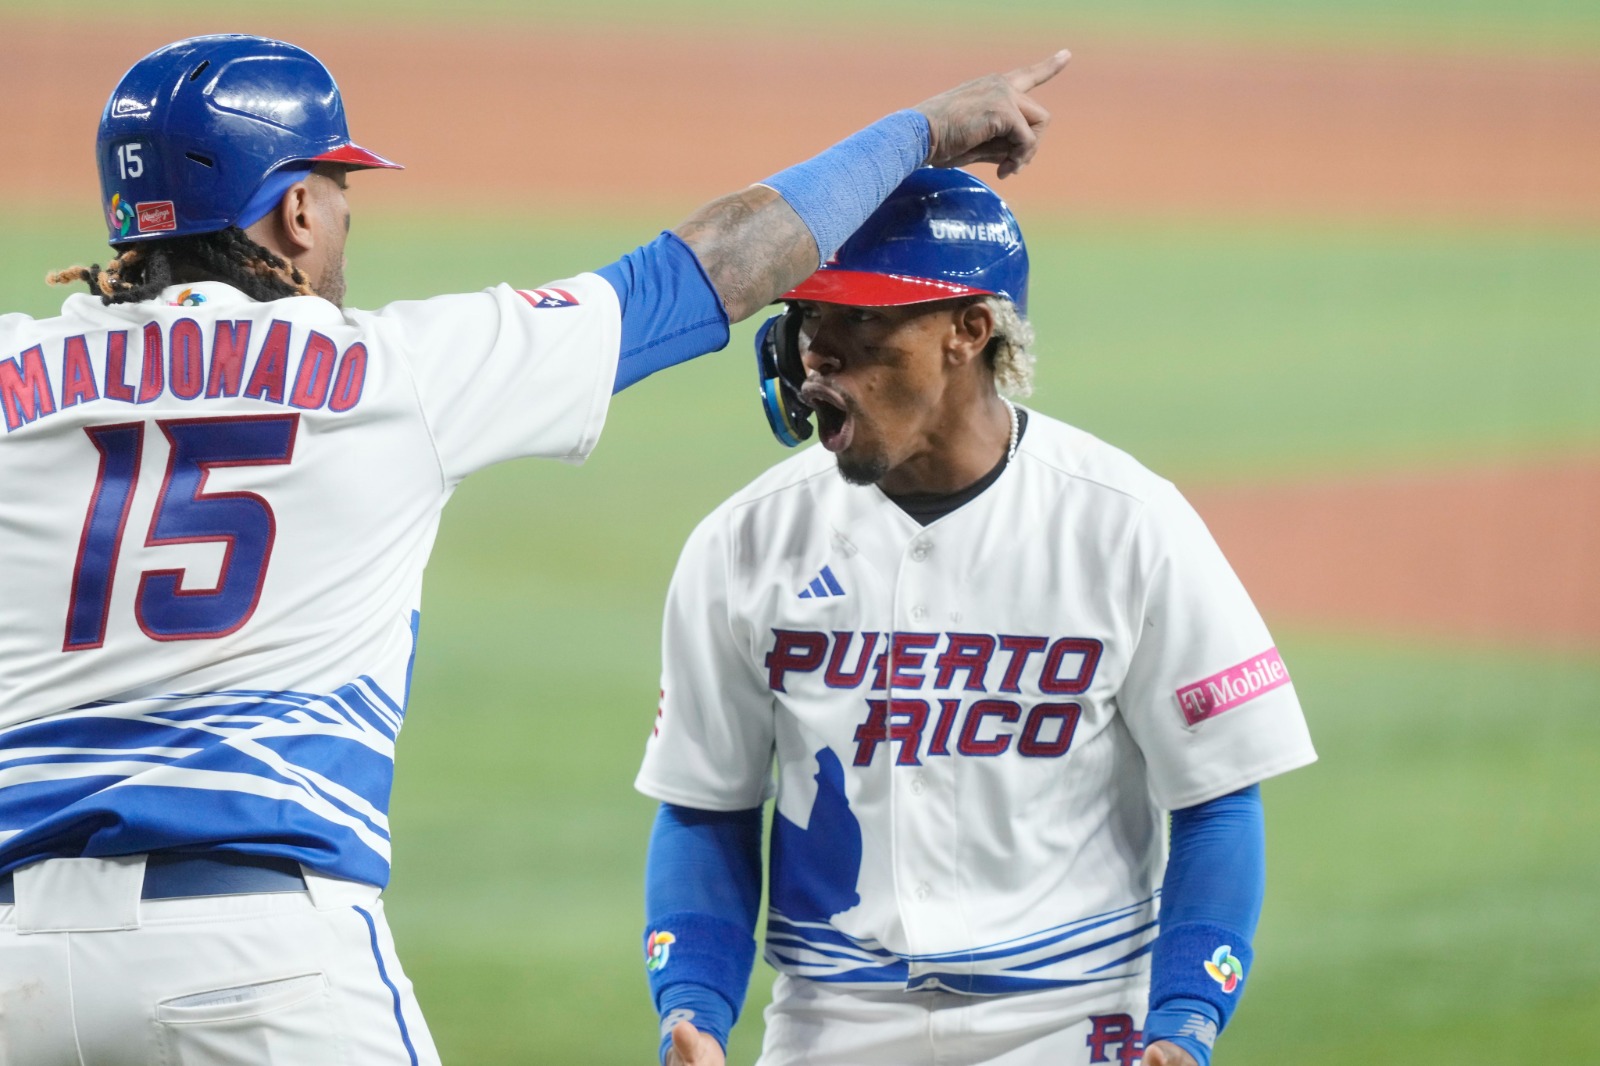 La selección de Puerto Rico doblegó a Nicaragua, por marcador 9-1, en el partido debut de ambas selecciones, en la primera fecha del Grupo D, que tiene como sede el LoanDepot Park de los Miami Marlins